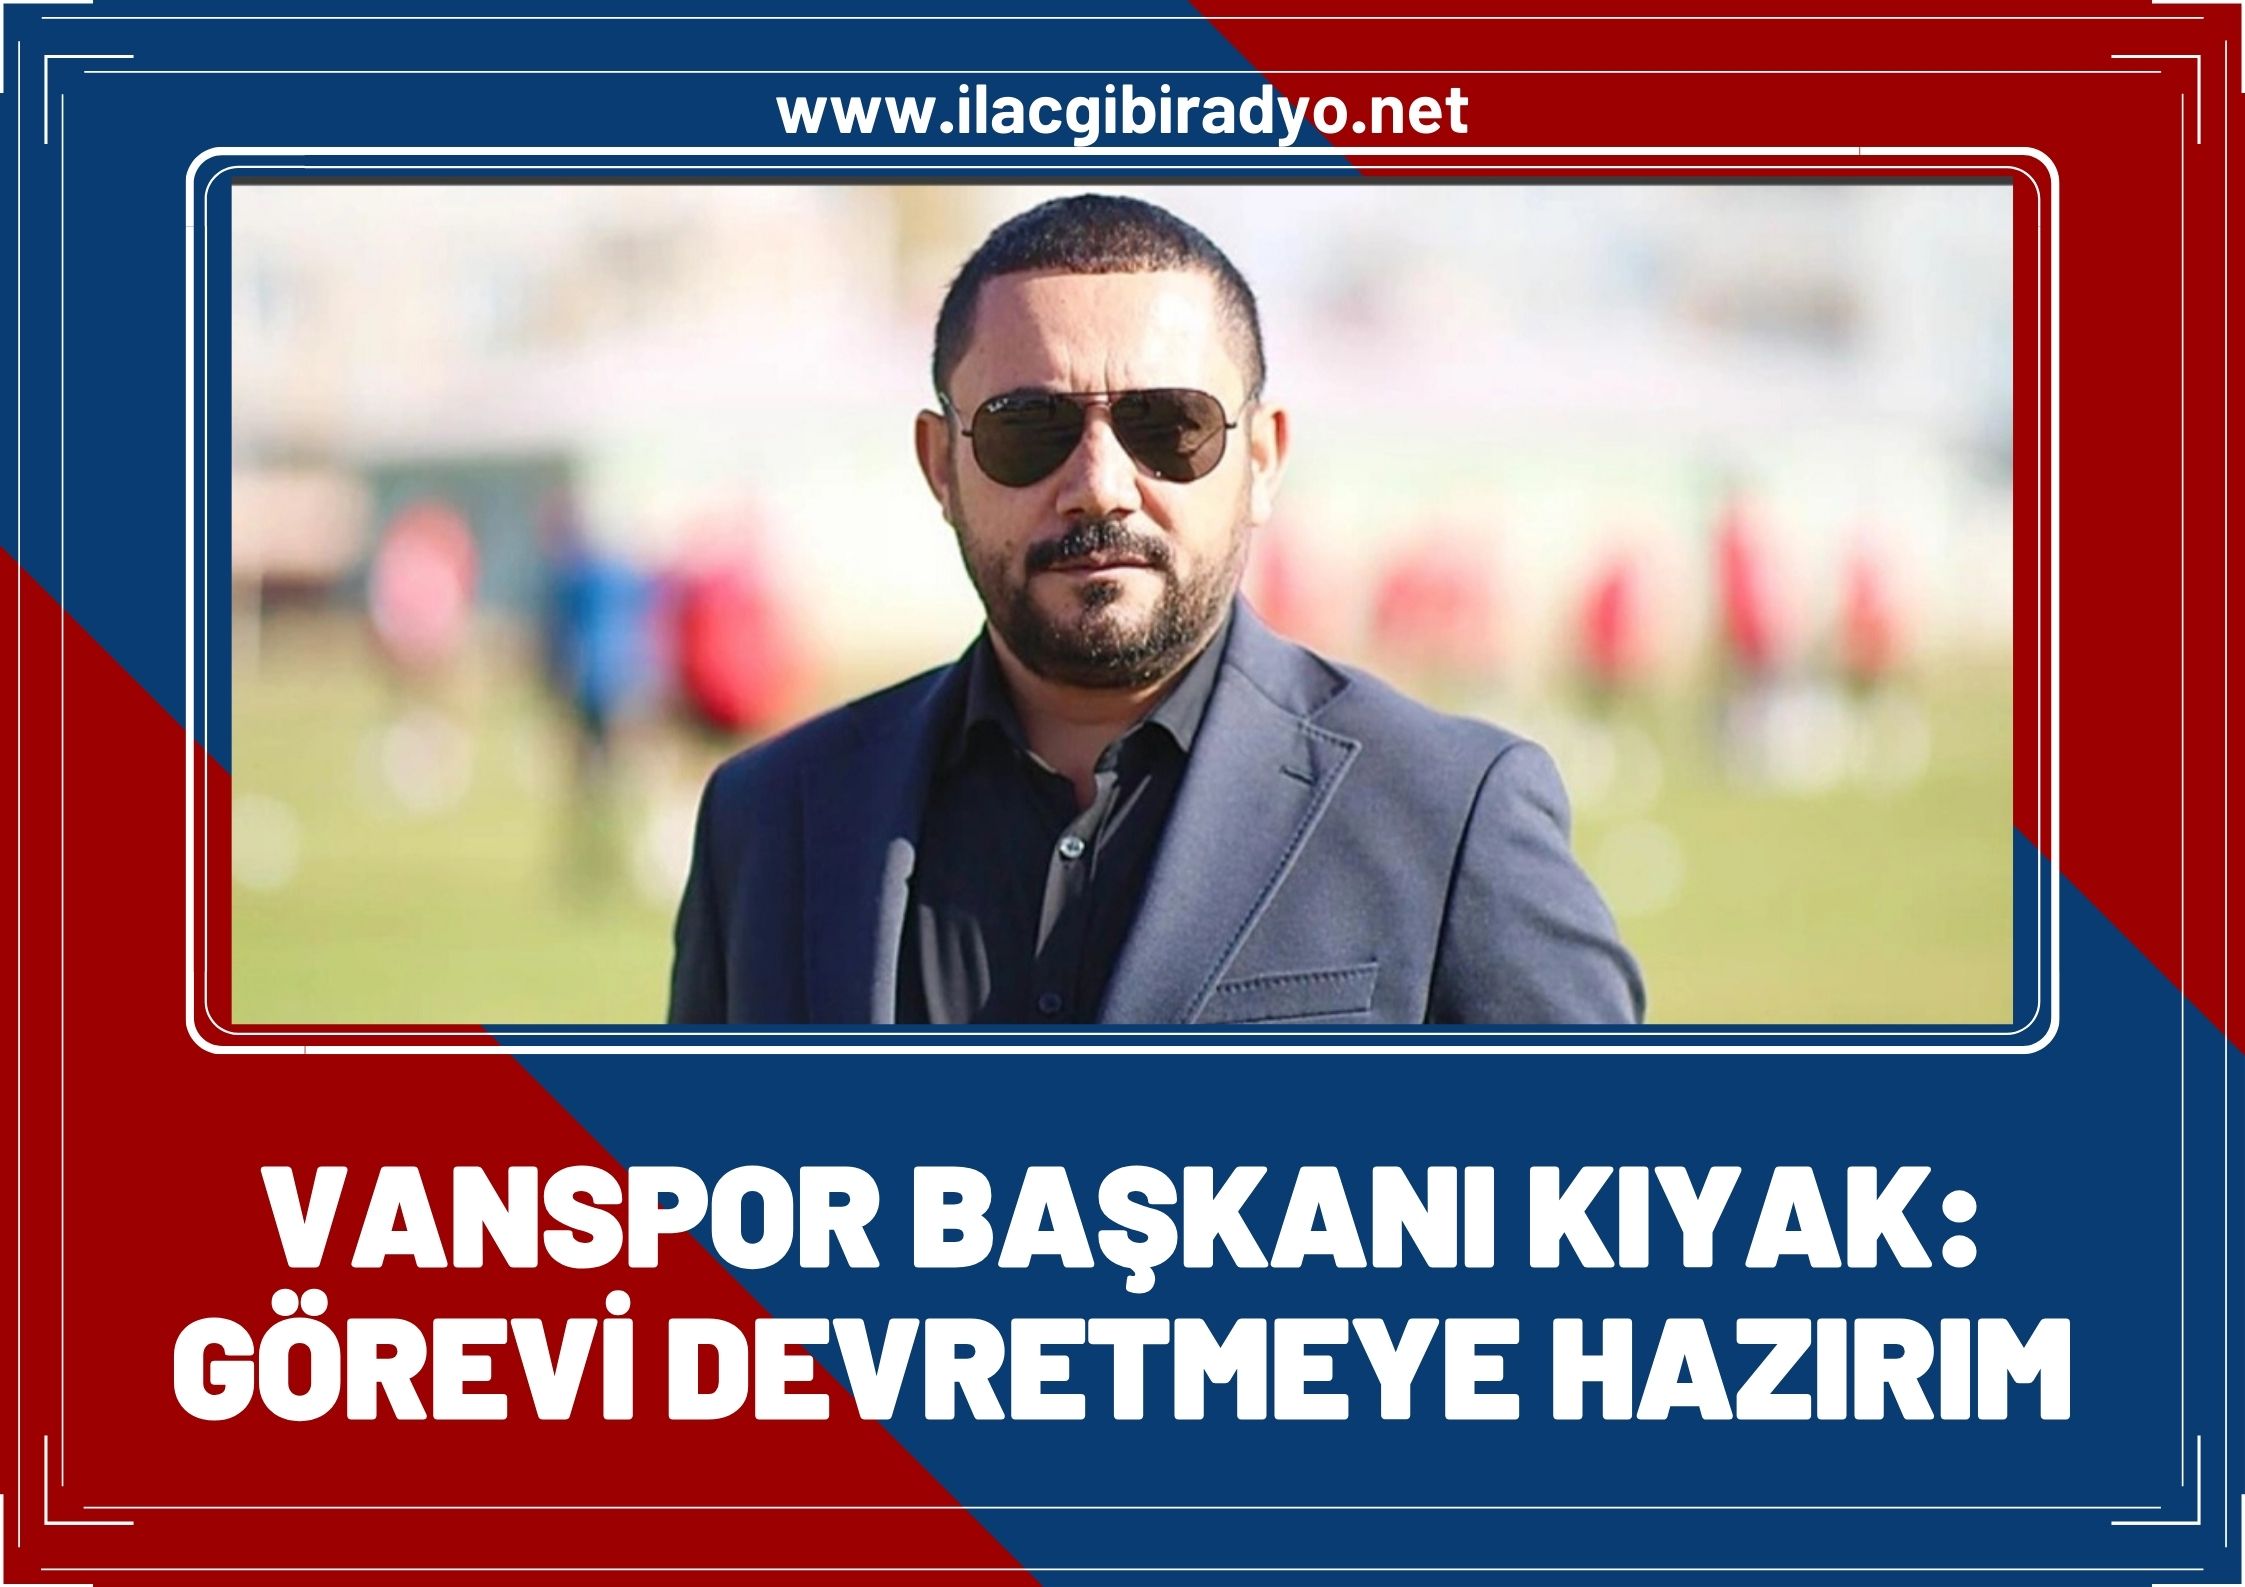 Van Spor FK Başkanı Feyat Kıyak: Görevi devretmeye hazırım